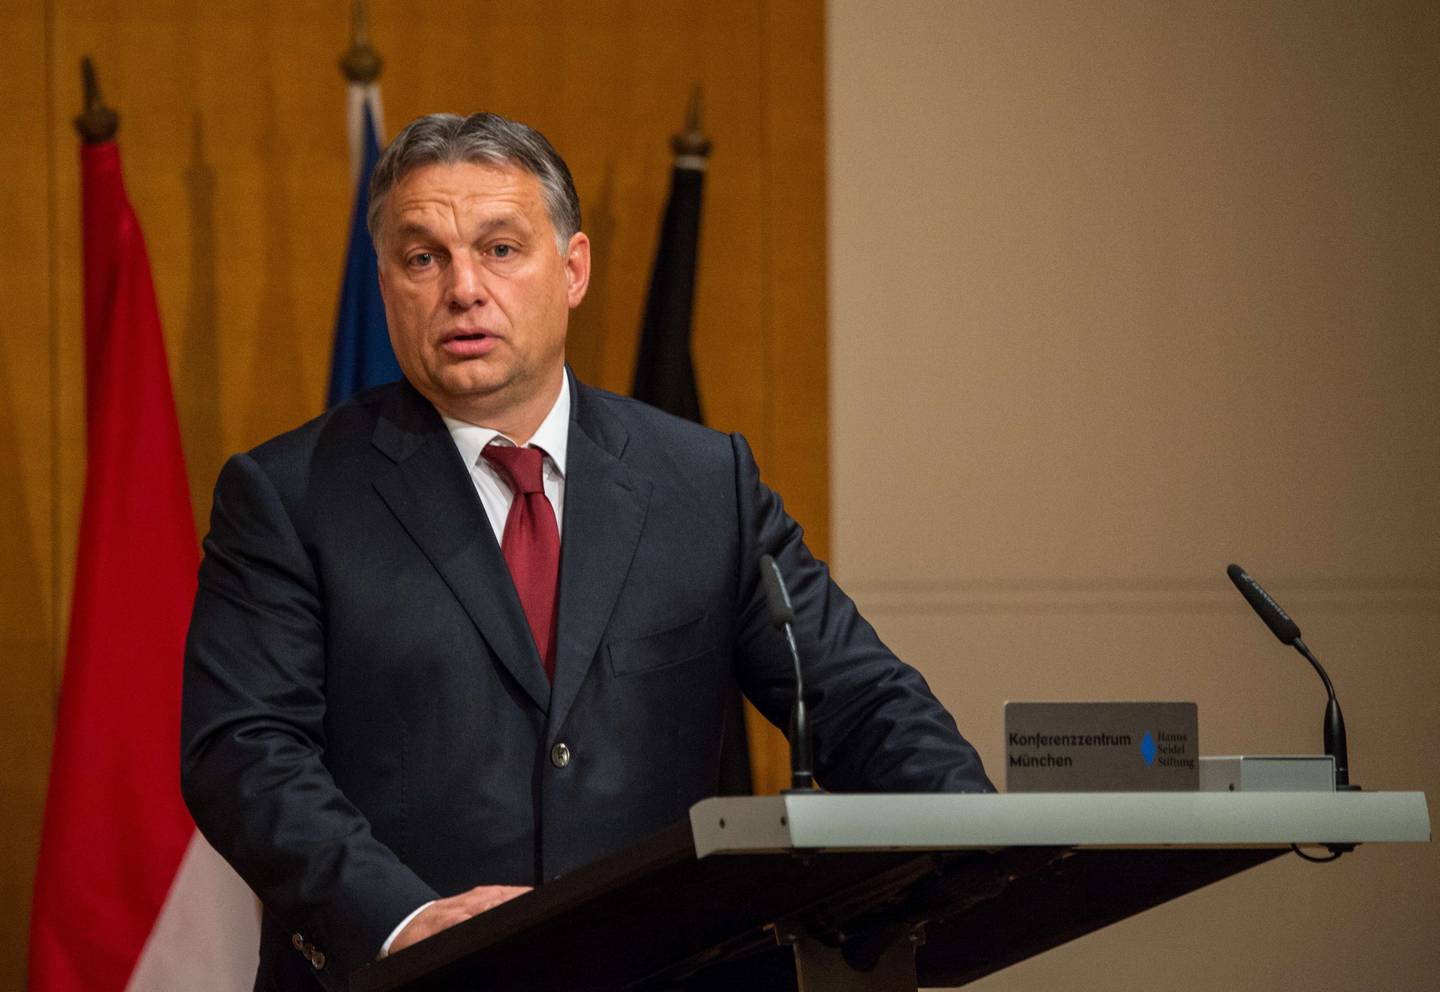 Statsminister Viktor Orbán strammer inn velferdsordningene. FOTO: NTB SCANPIX